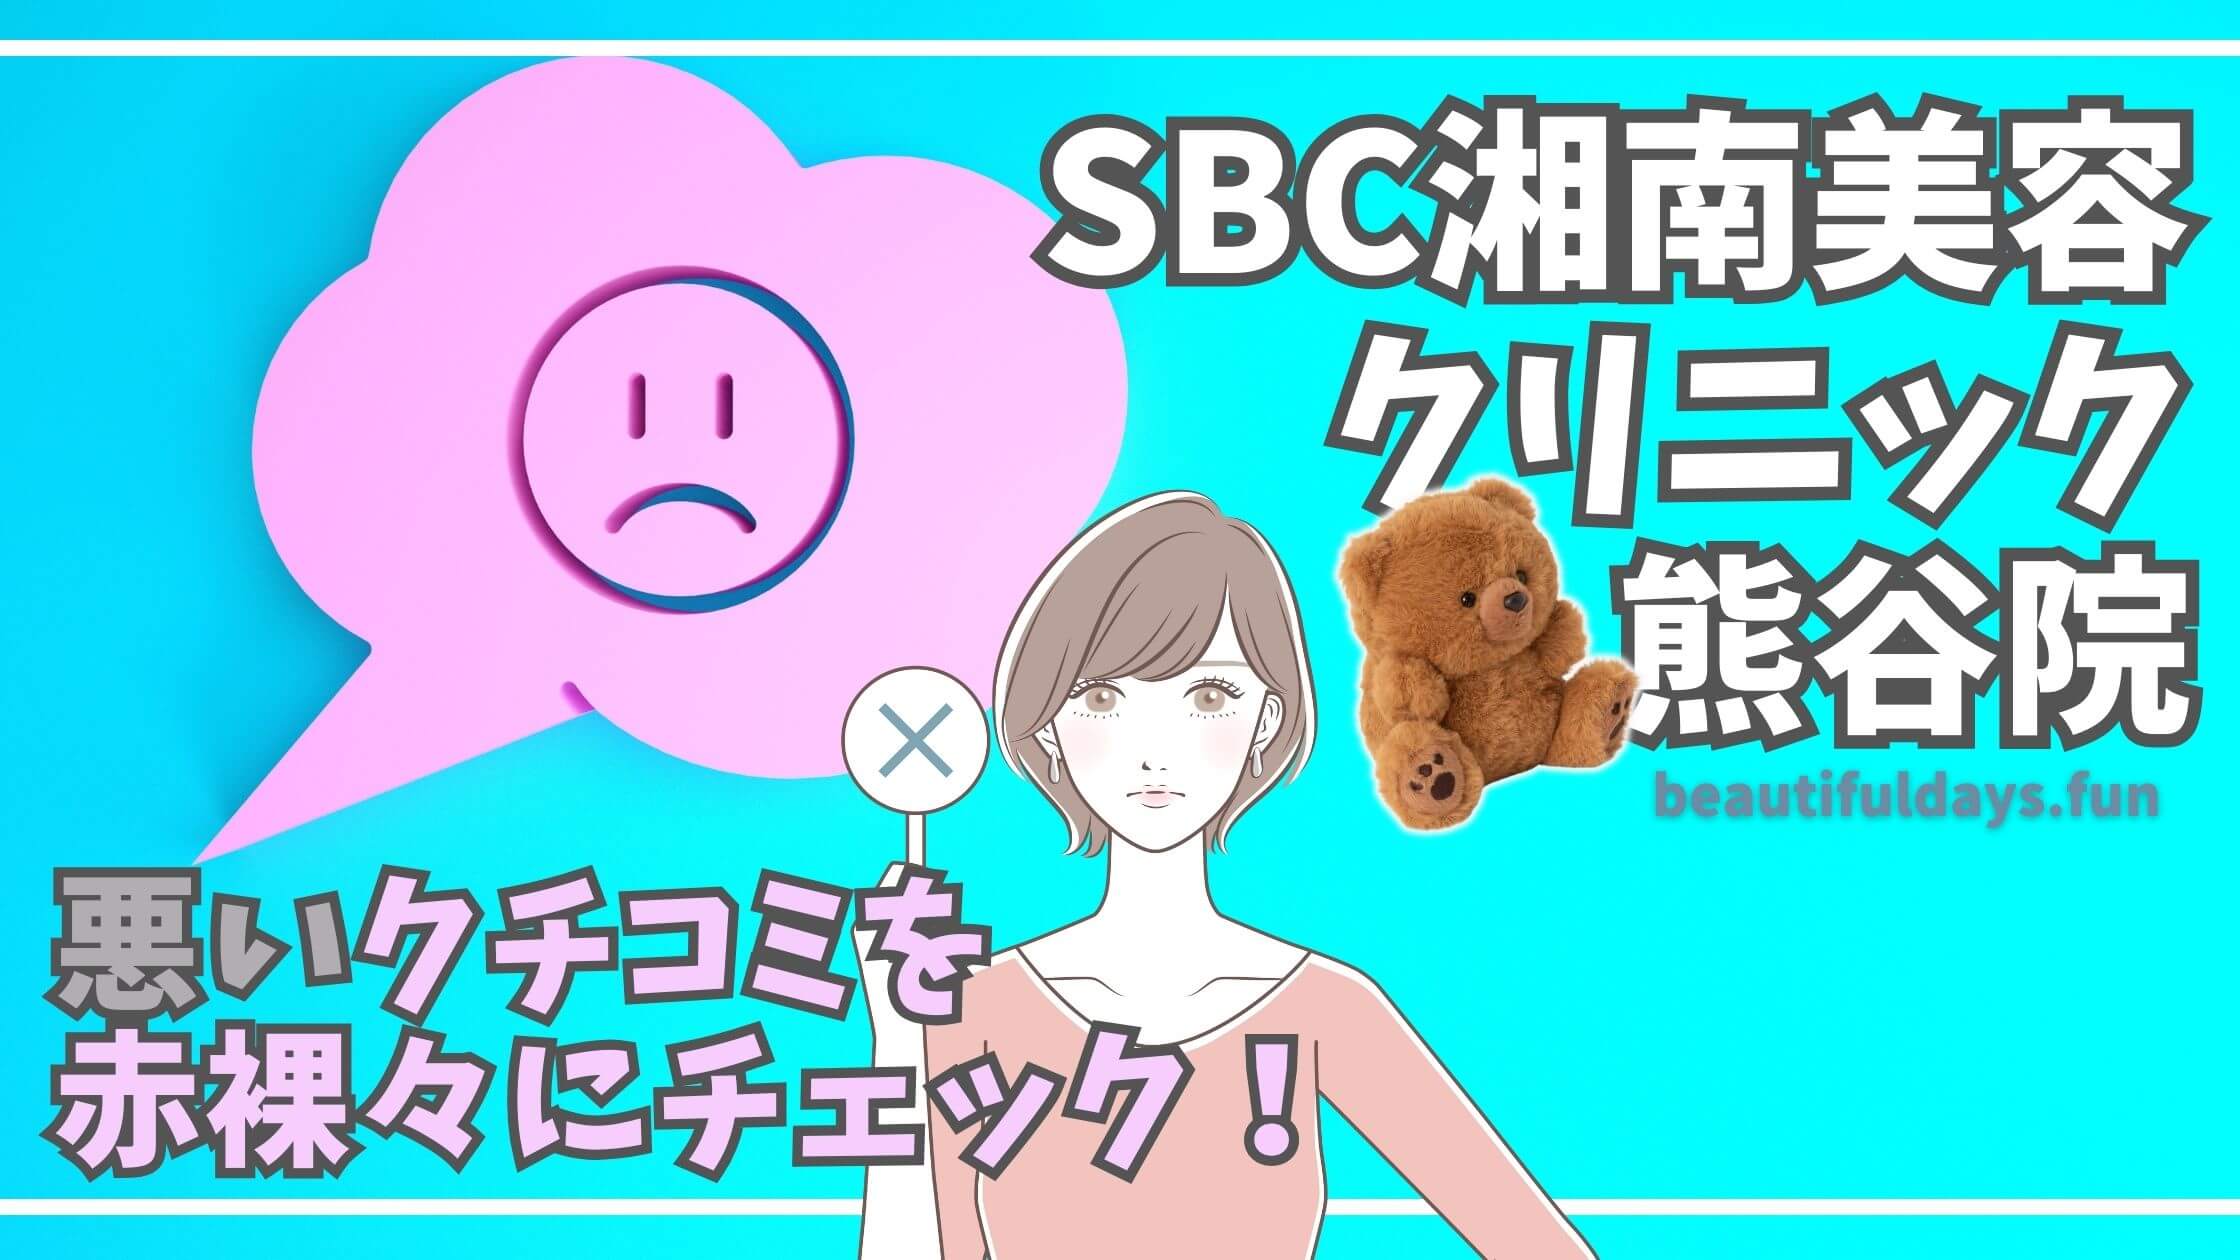 SBC-kumagaya-reviews-bad